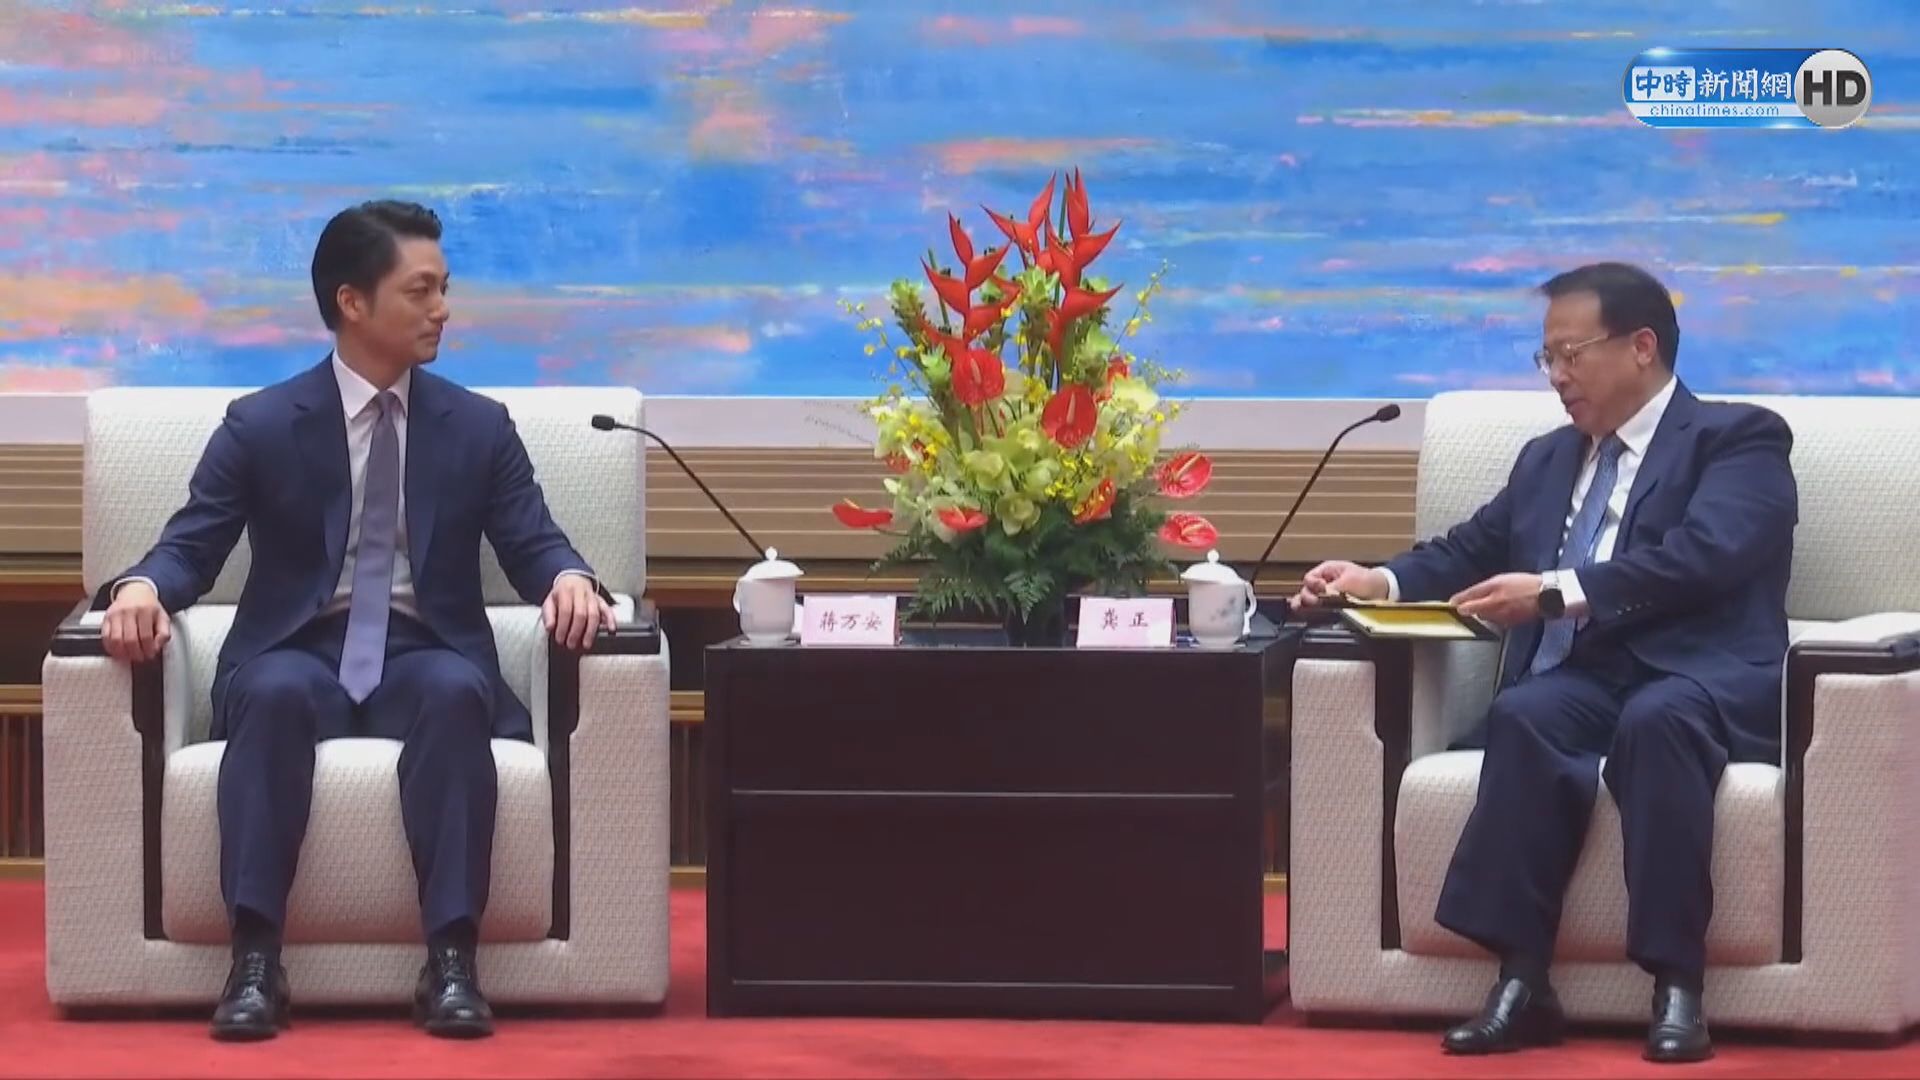 上海市長龔正會見到訪的台北市長蔣萬安